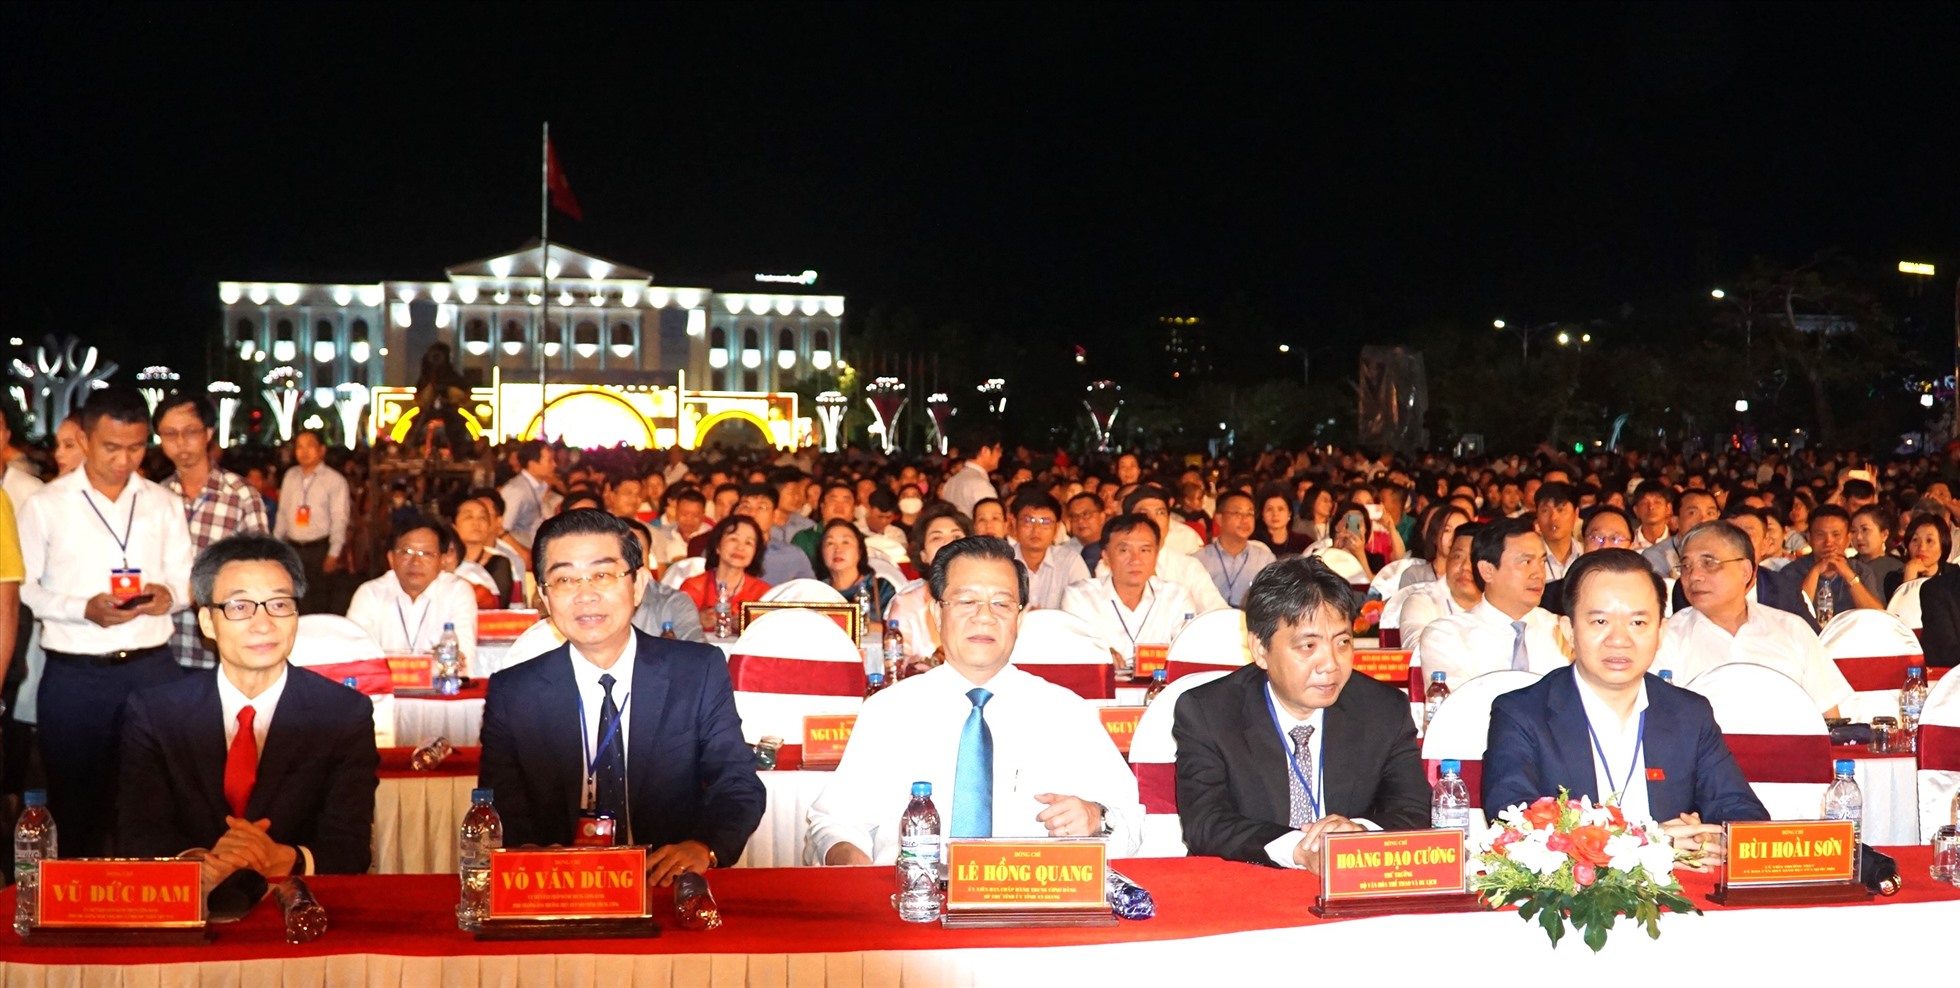 Phó thủ tướng Chính phủ cùng nhiều khách mời từ TW về dự Ngày hội văn hóa - du lịch Bạc Liêu và lễ hội Dạ cổ hoài lang. Ảnh: Nhật Hồ